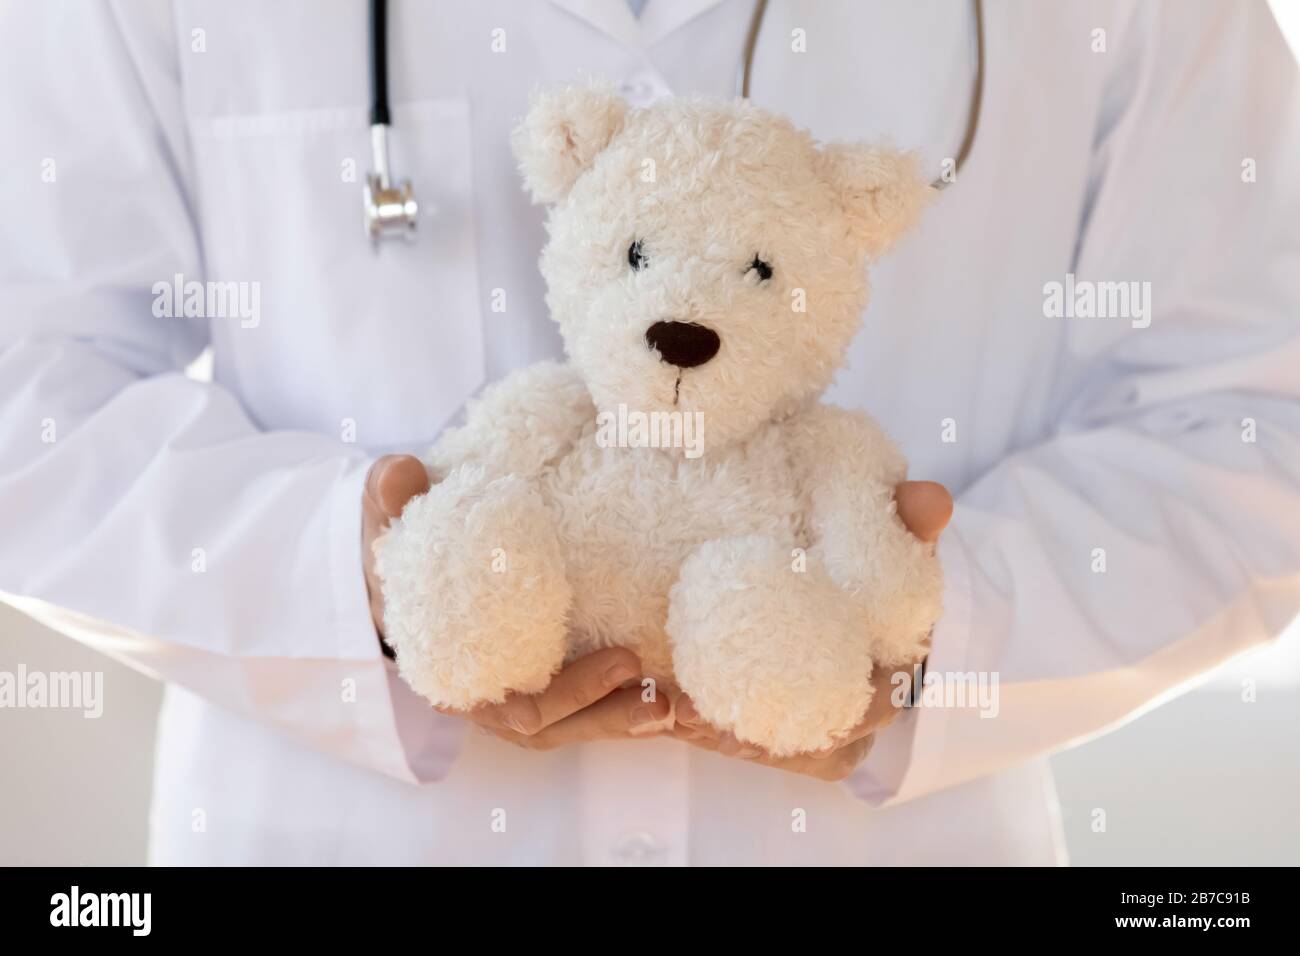 Jeune pédiatre en manteau blanc tenant le jouet dans les mains. Banque D'Images